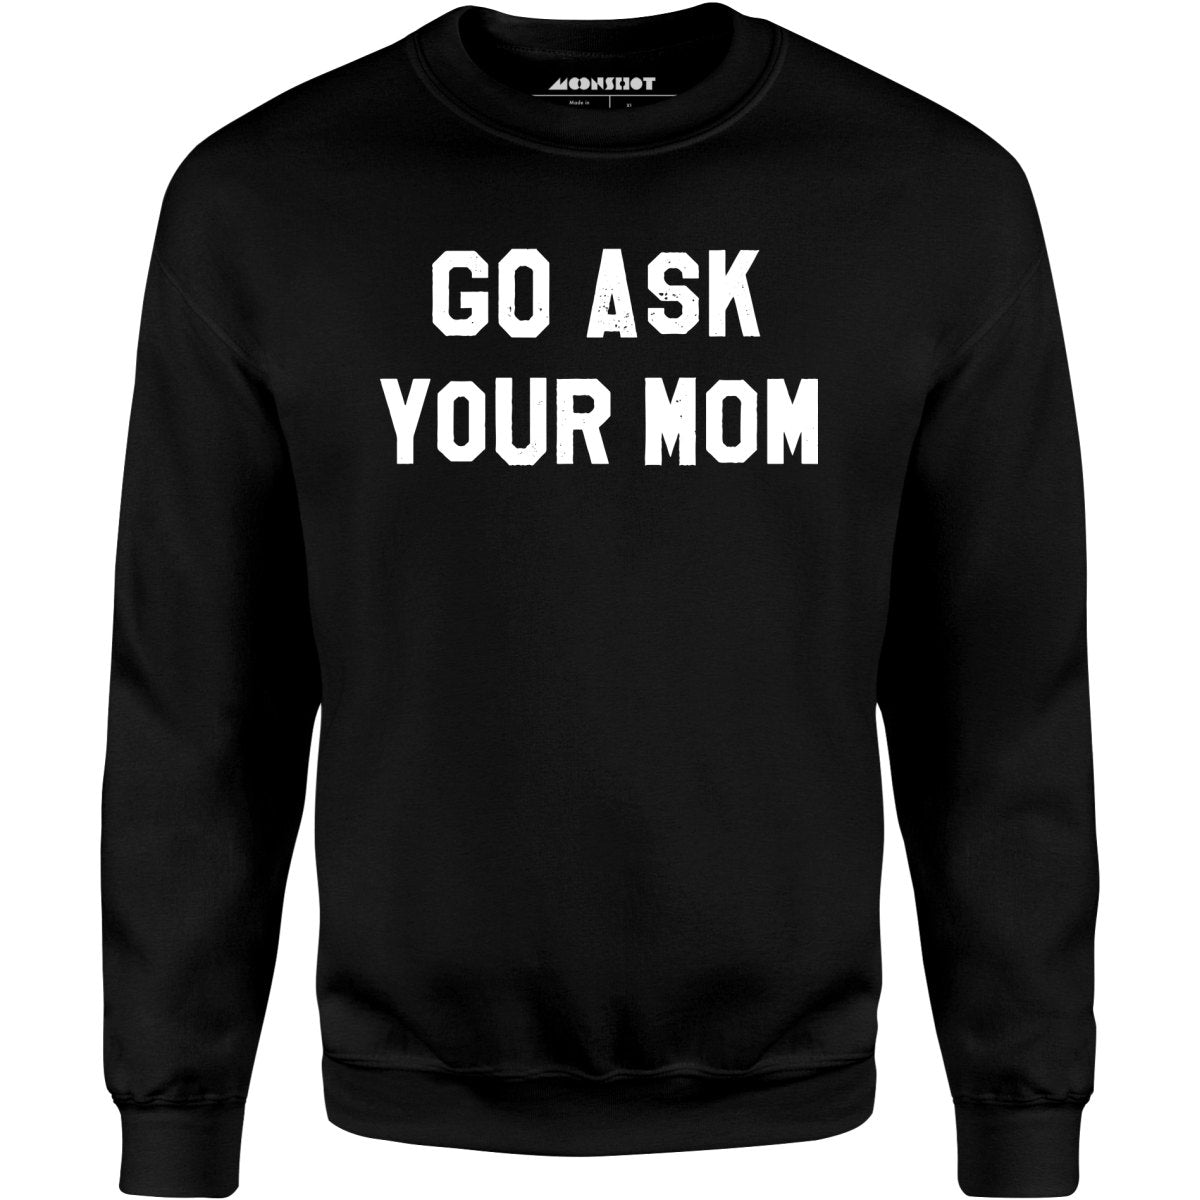 Go Ask Your Mom - Unisex Sweatshirt